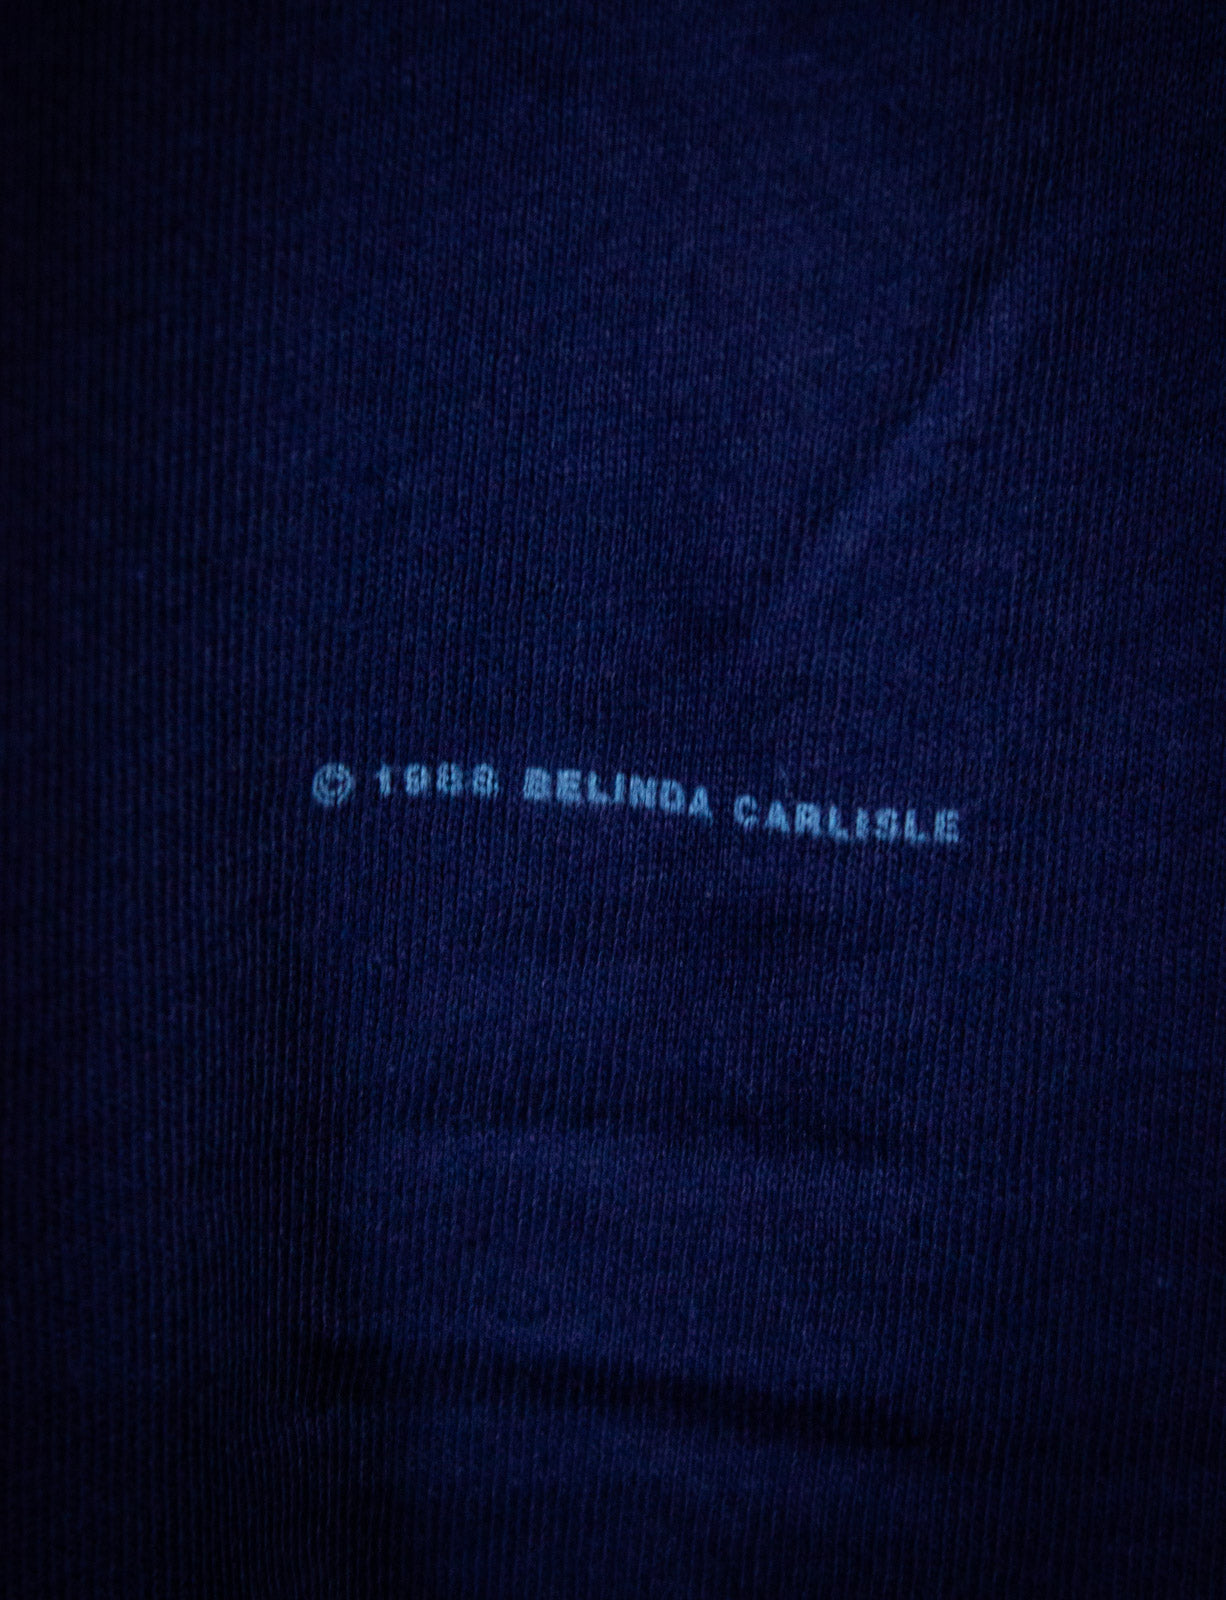 Vintage Belinda Carlisle Good Heavens! Concert T Shirt 1988 Blue Large